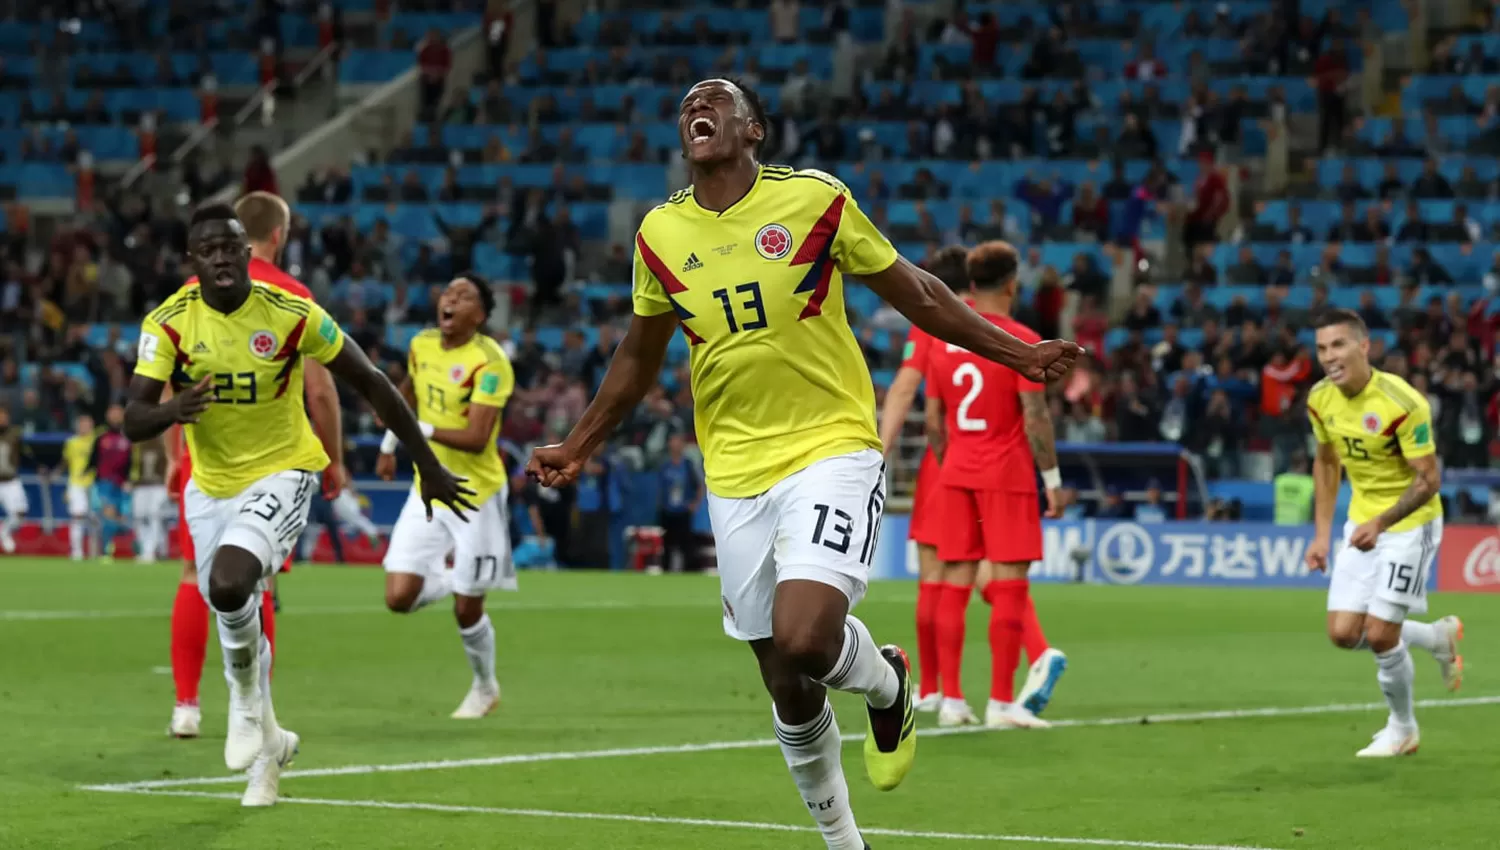 En el Mundial, Mina fue el goleador de la selección colombiana. En el blaugrana no encuentra lugar entre los titulares.
FOTO TOMADA DE ES.FIFA.COM